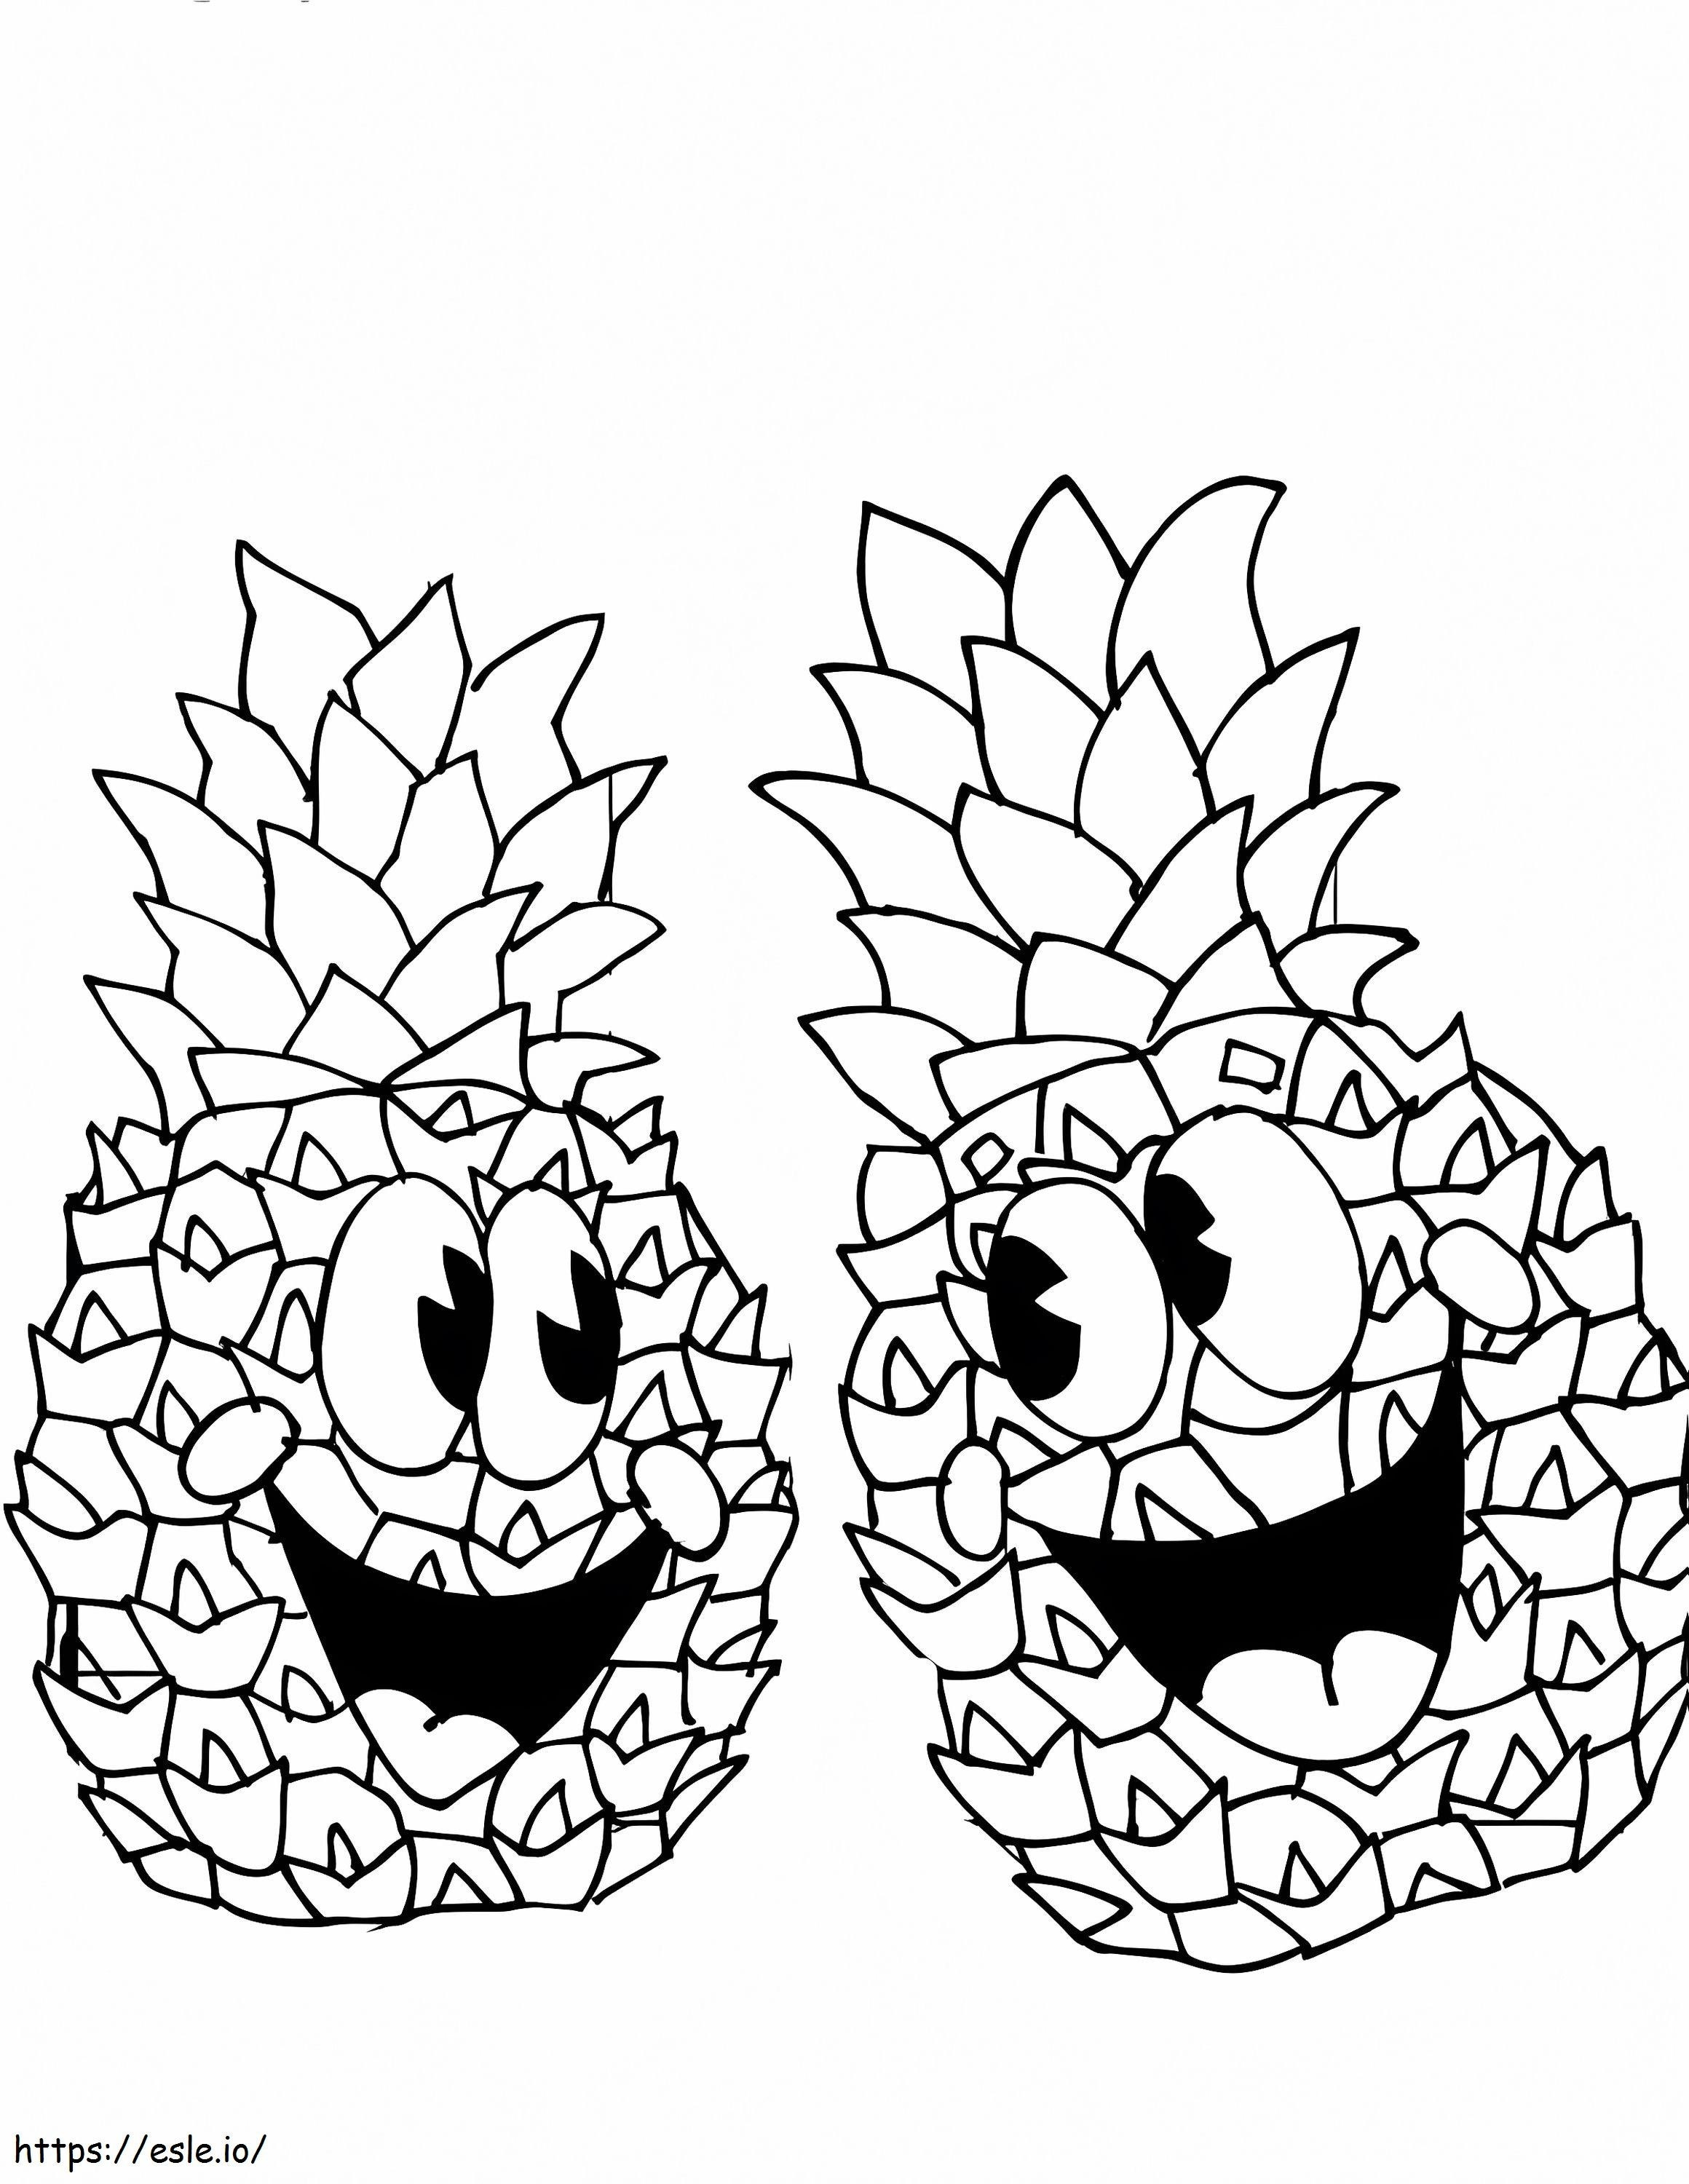 Um par de abacaxis felizes para colorir